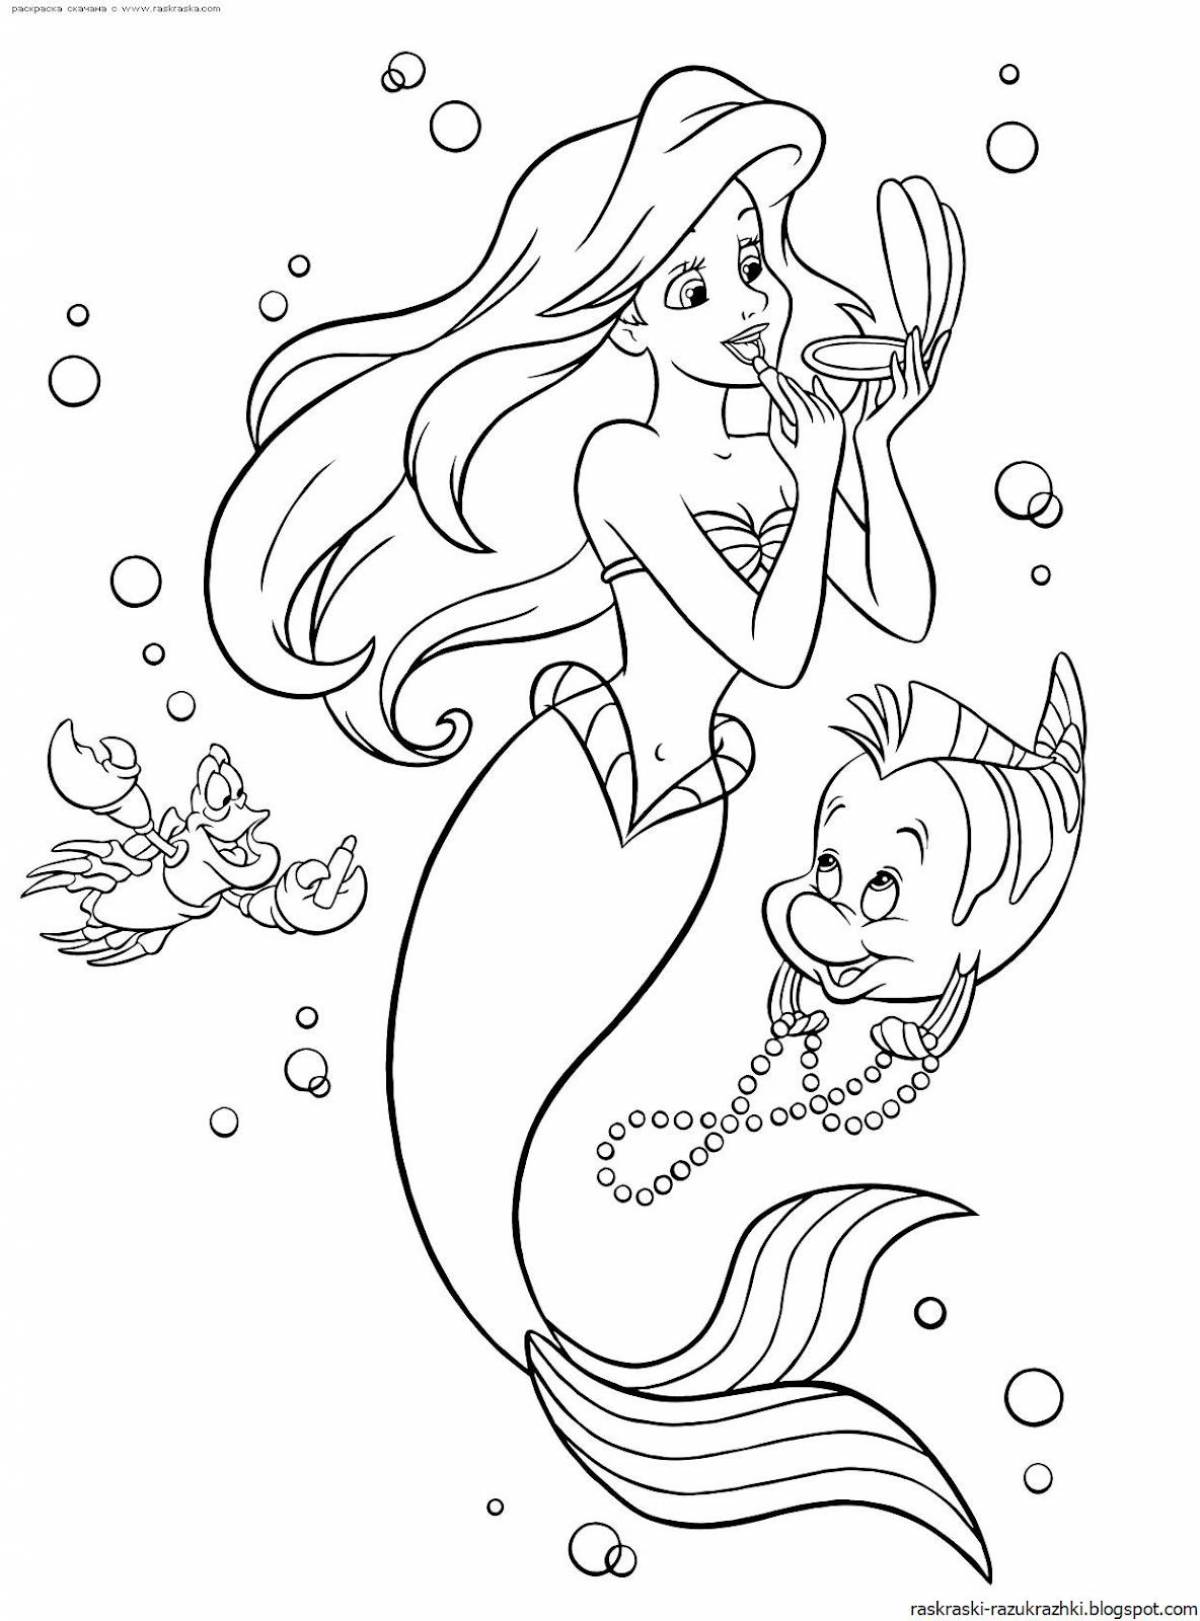 Mermaid coloring book for kids